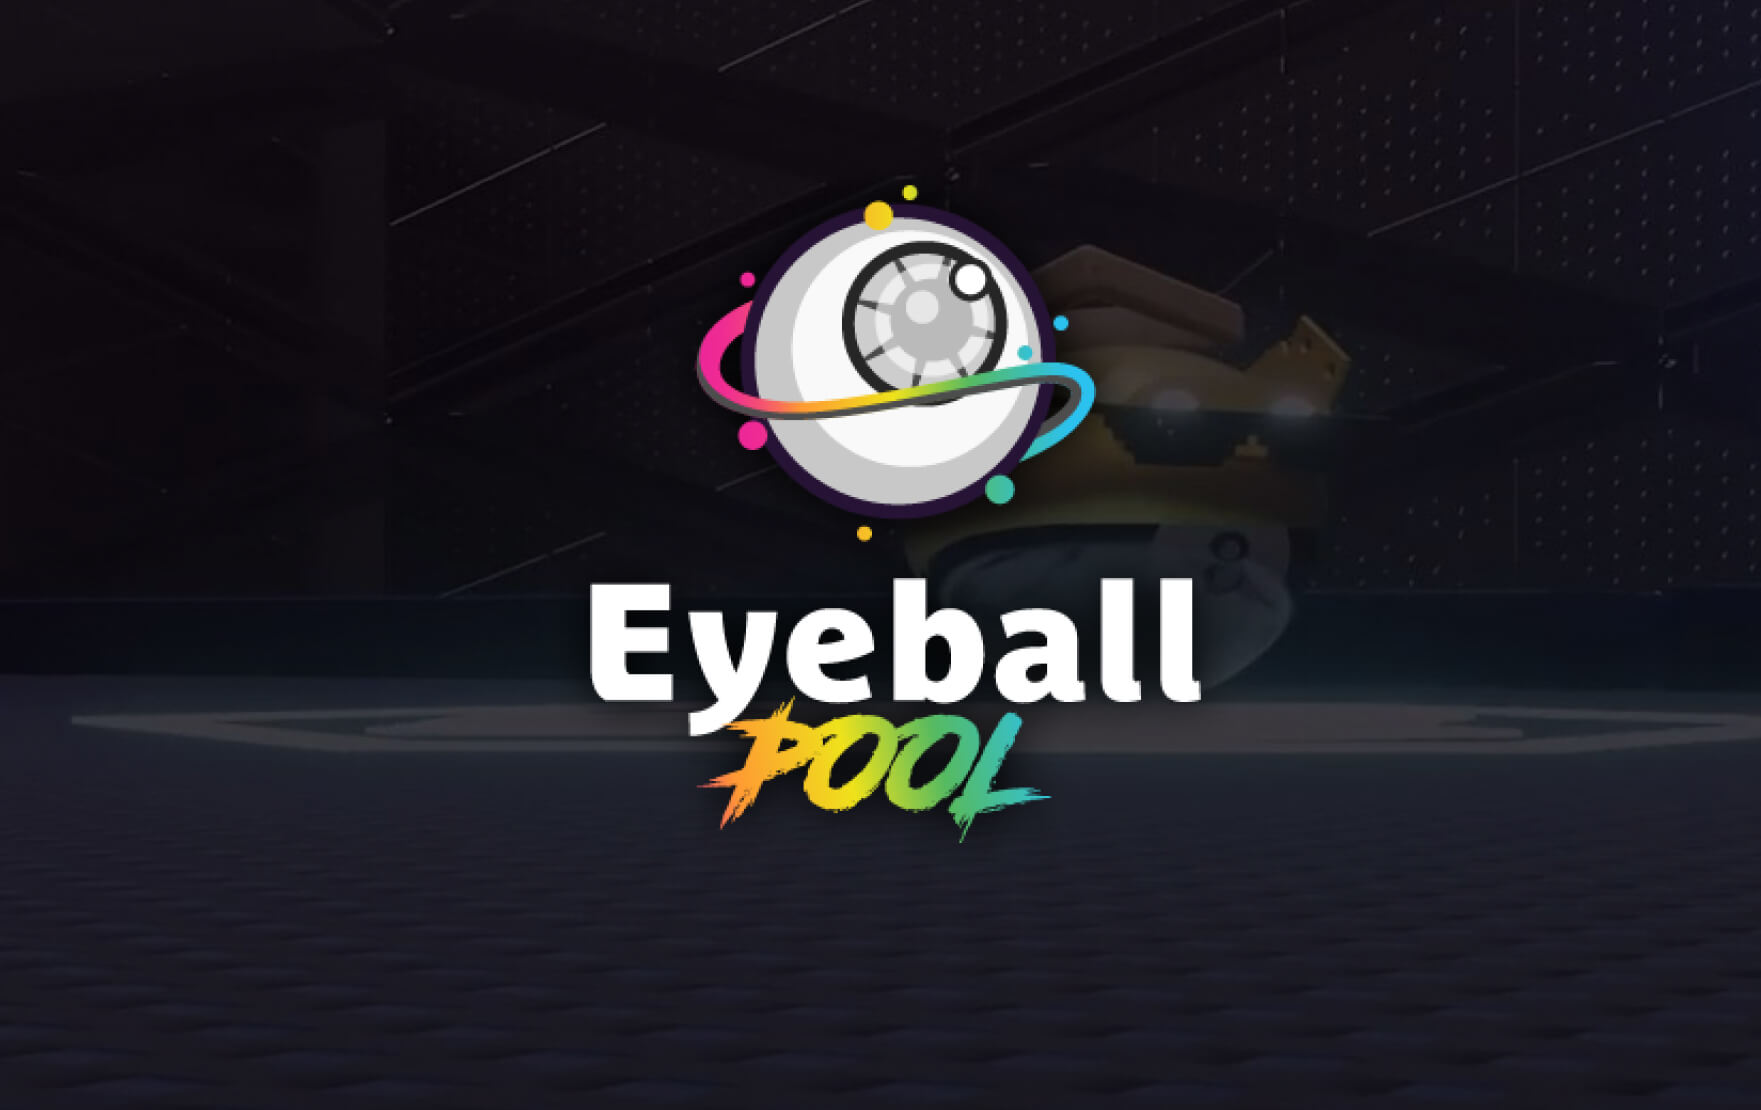 Eyeball Pool